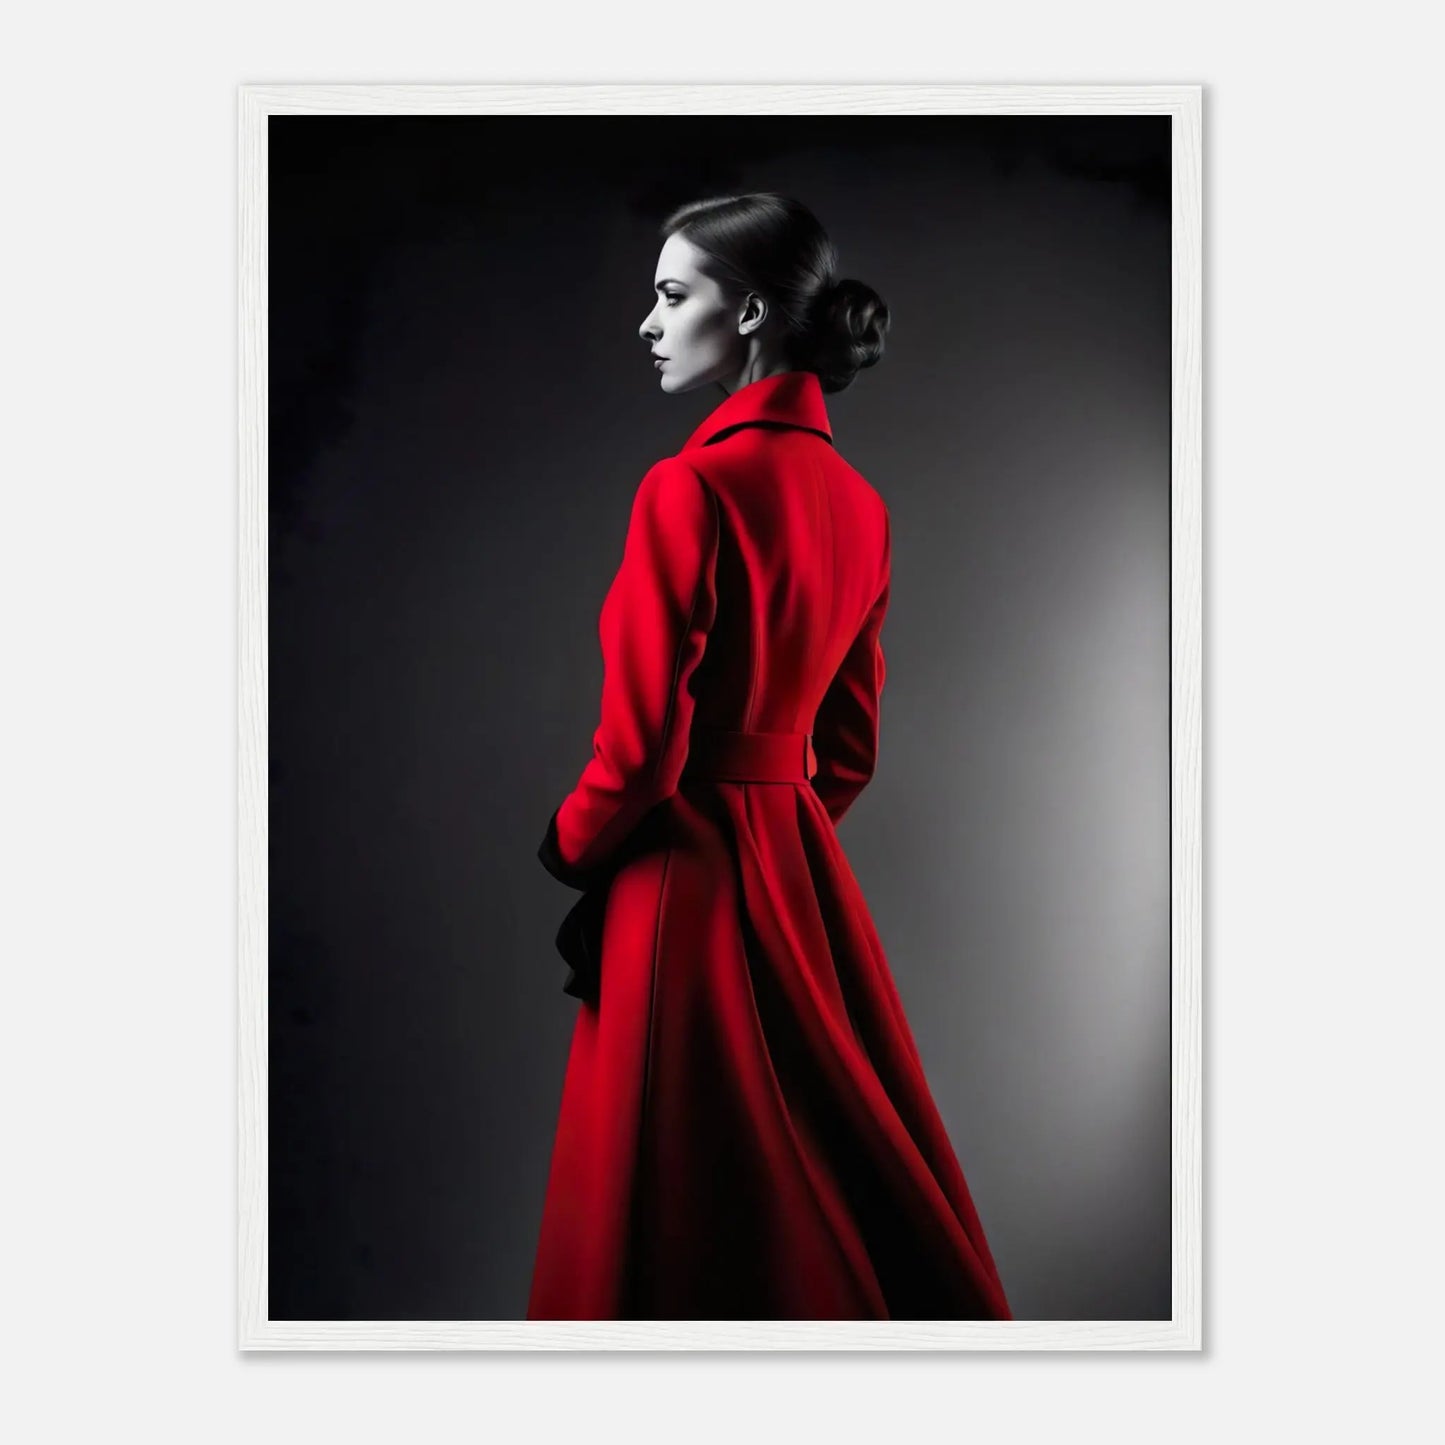 Gerahmtes Premium-Poster - Frau im roten Mantel - Schwarz-Weiß, KI-Kunst - RolConArt, Schwarz-Weiß mit Akzentfarben, 45x60-cm-18x24-Weißer-Rahmen